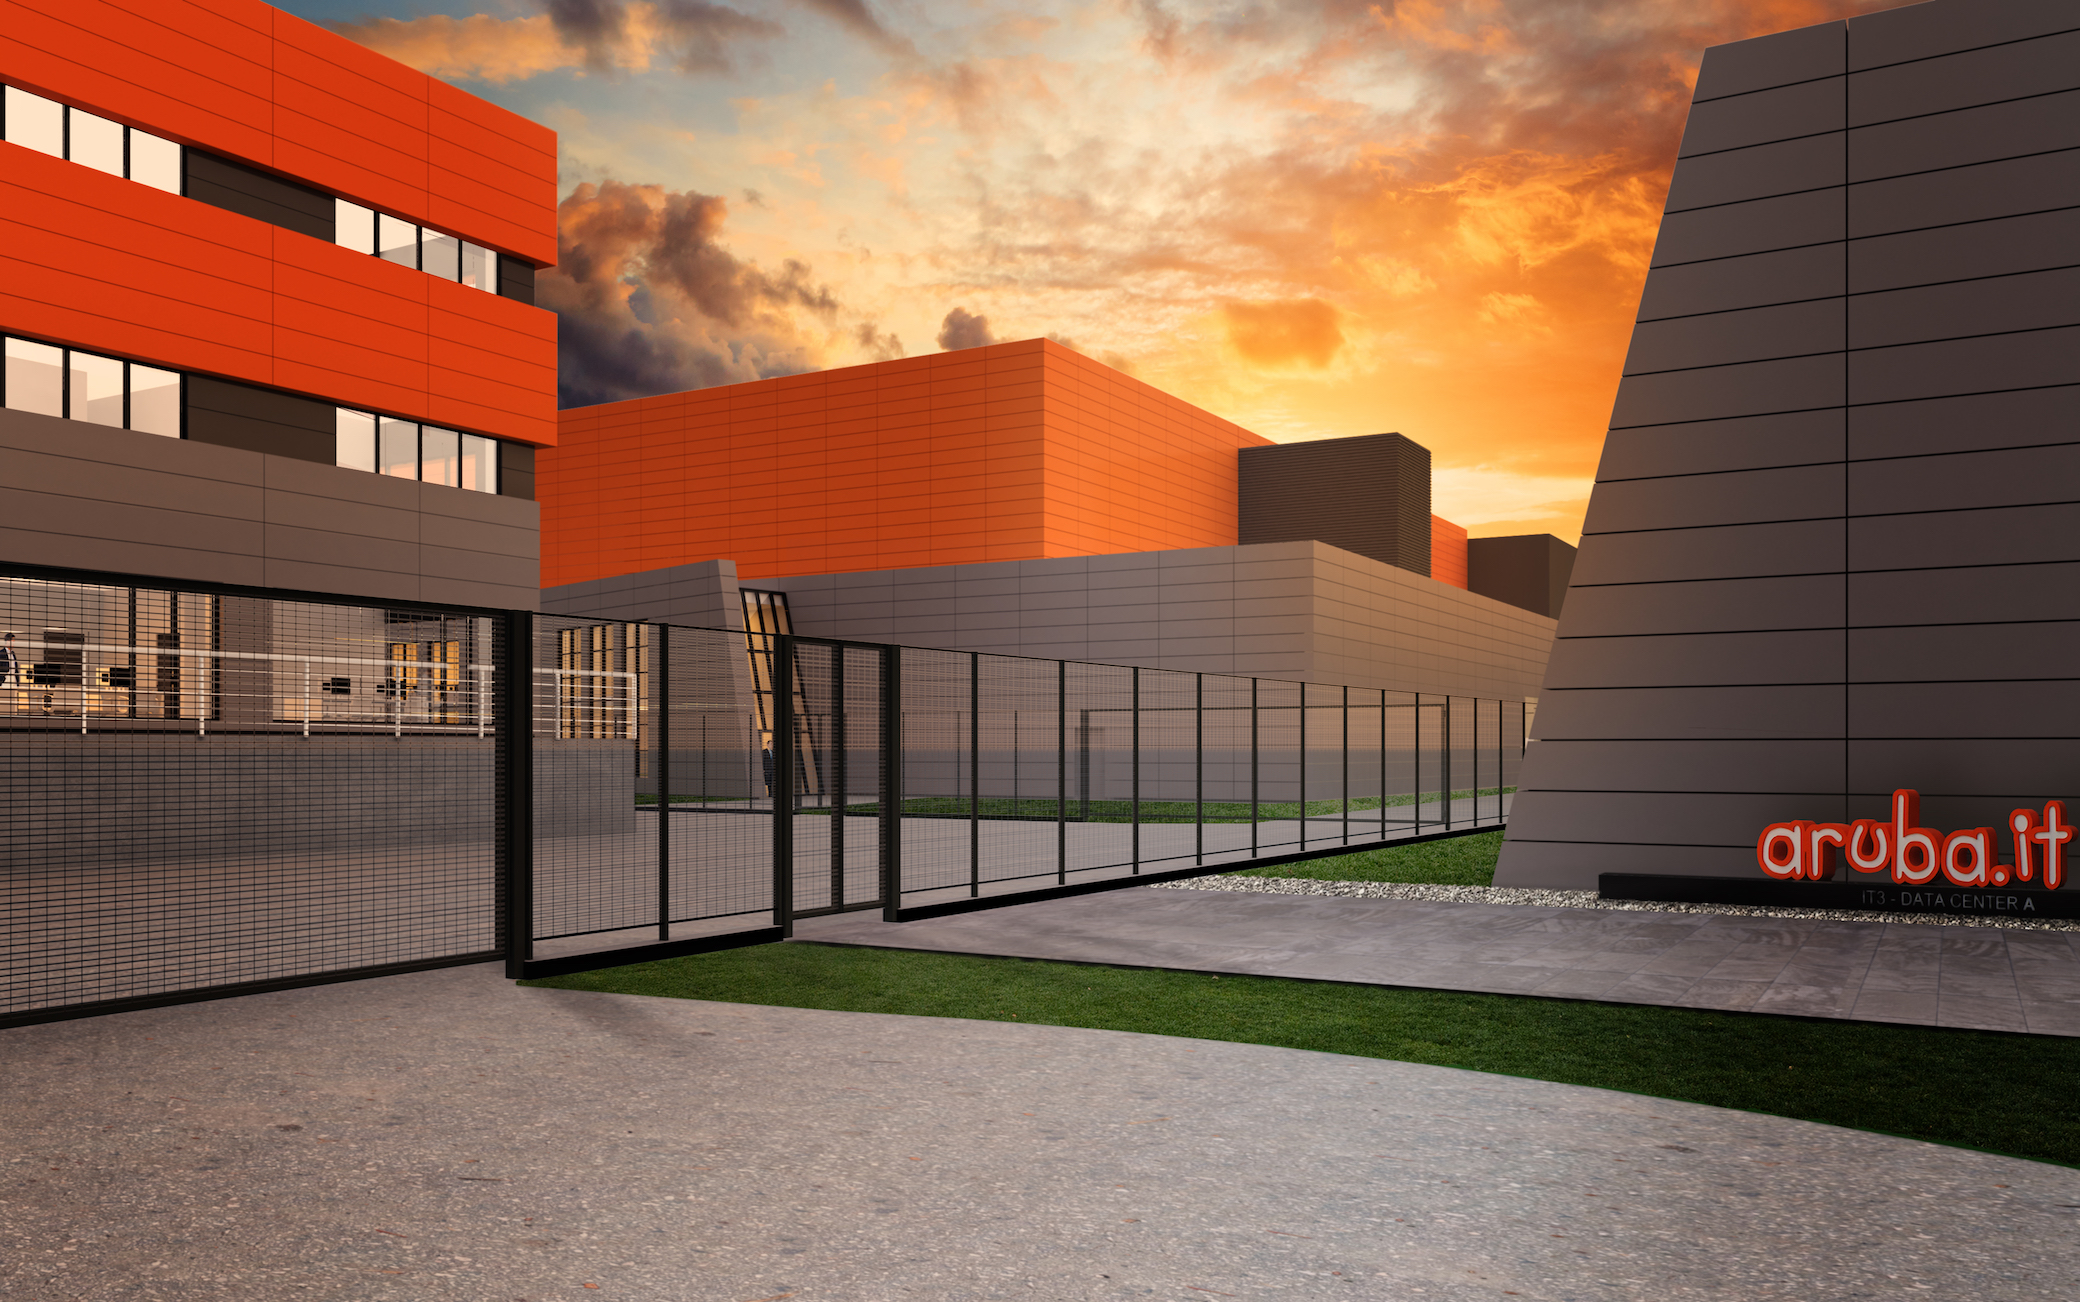 Aruba, due nuovi data center nel campus alle porte di Milano